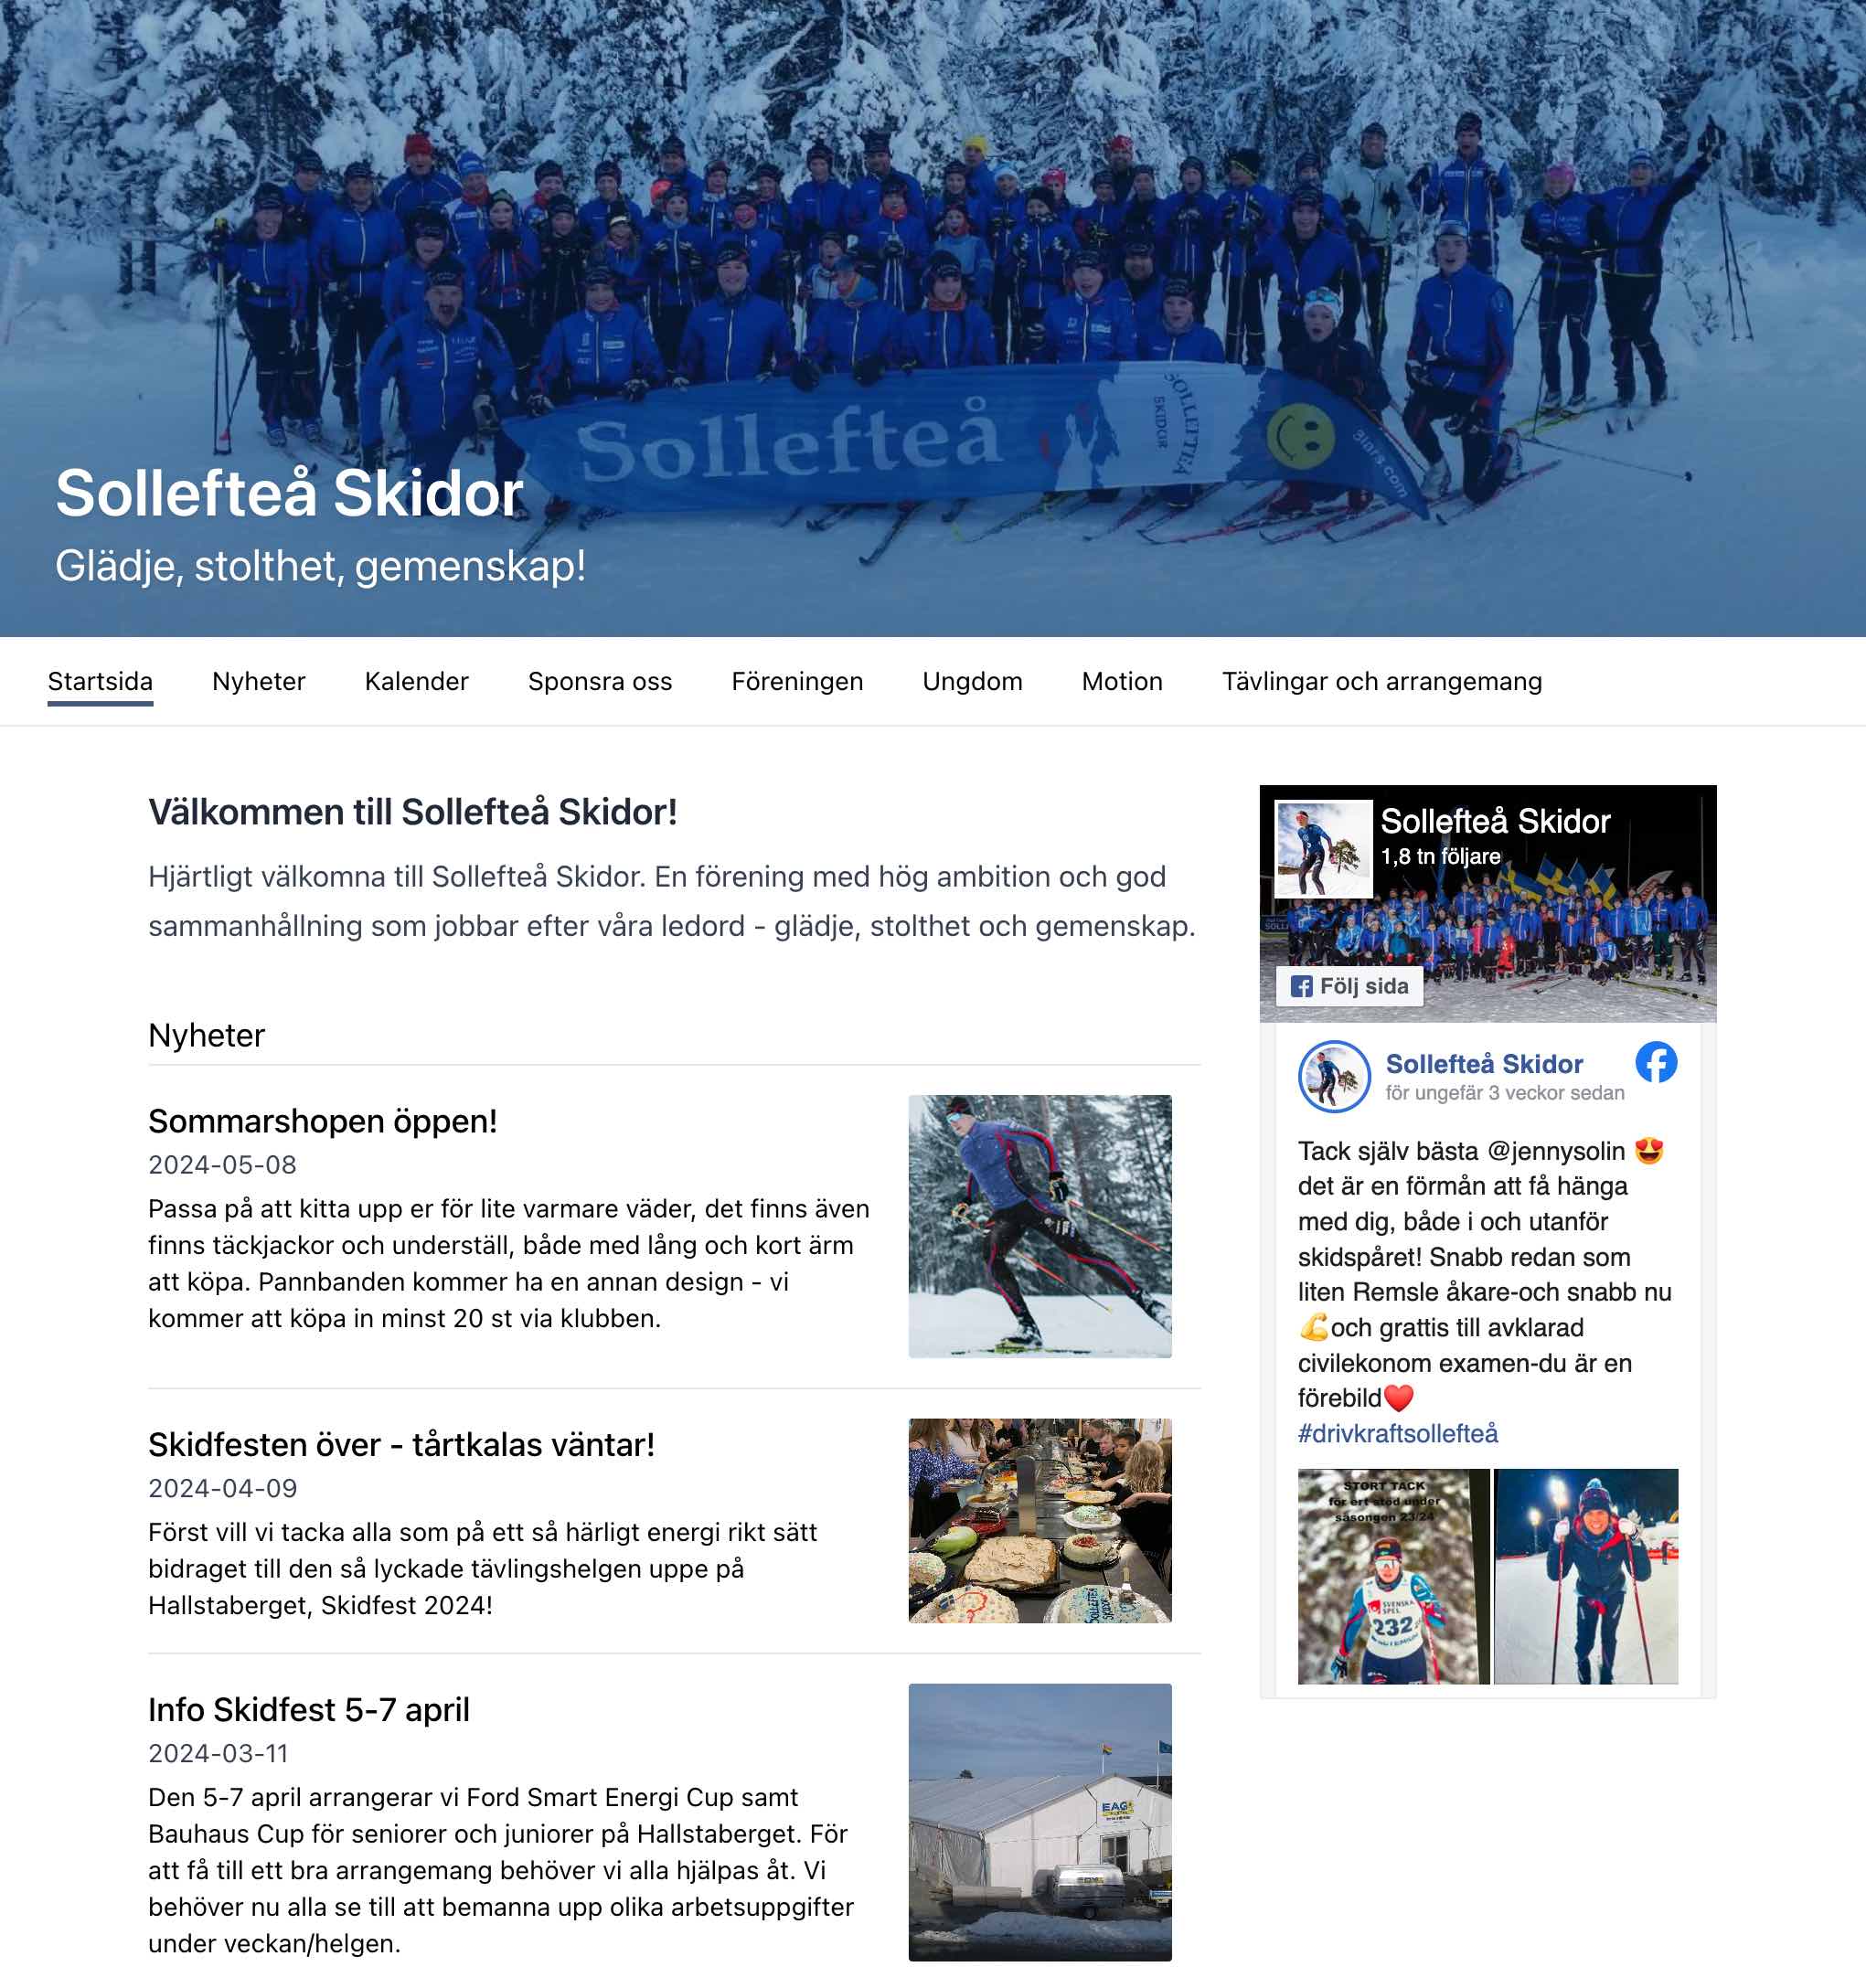 Skärmbild av Sollefteå Skidors nya hemsida